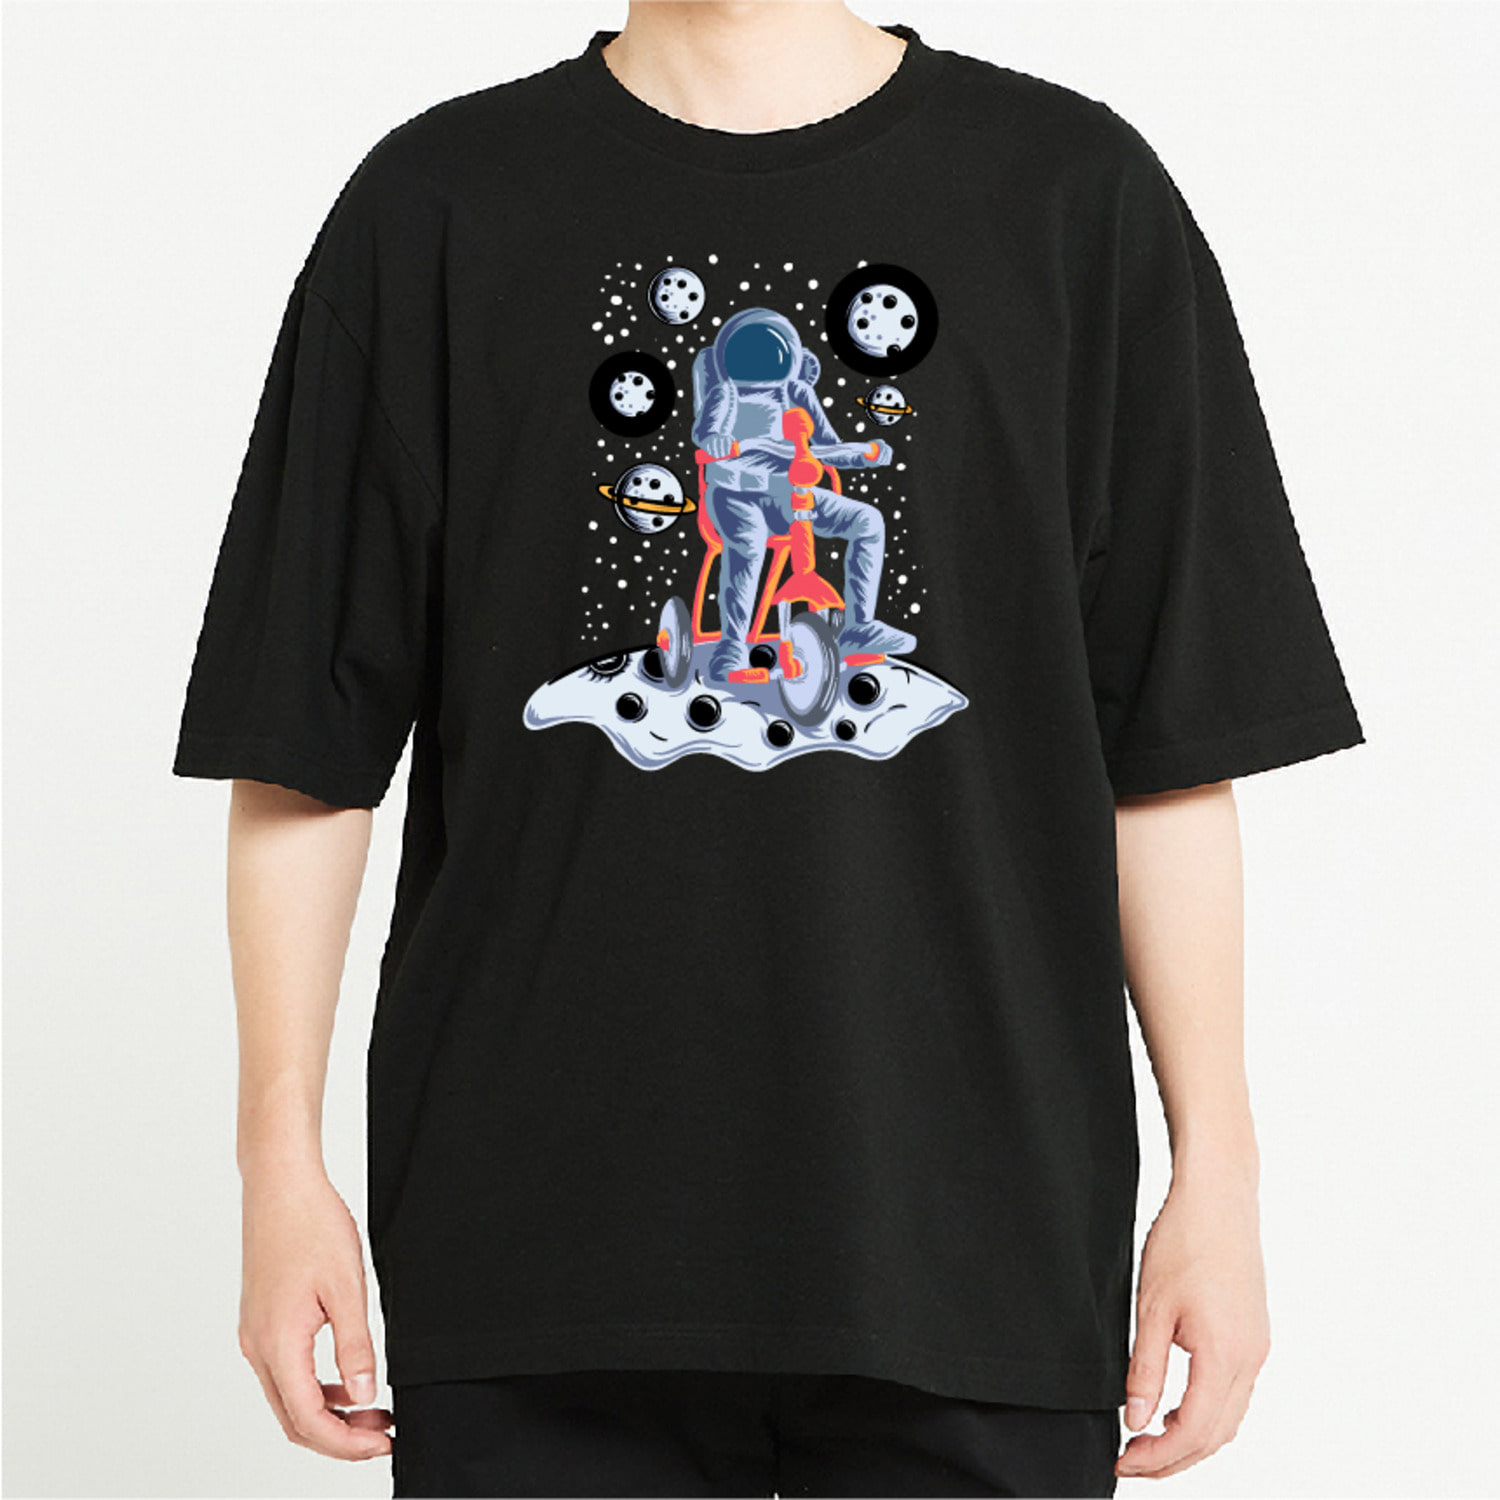 우주 행성 자전거 그래픽 오버핏 티셔츠 motor.19